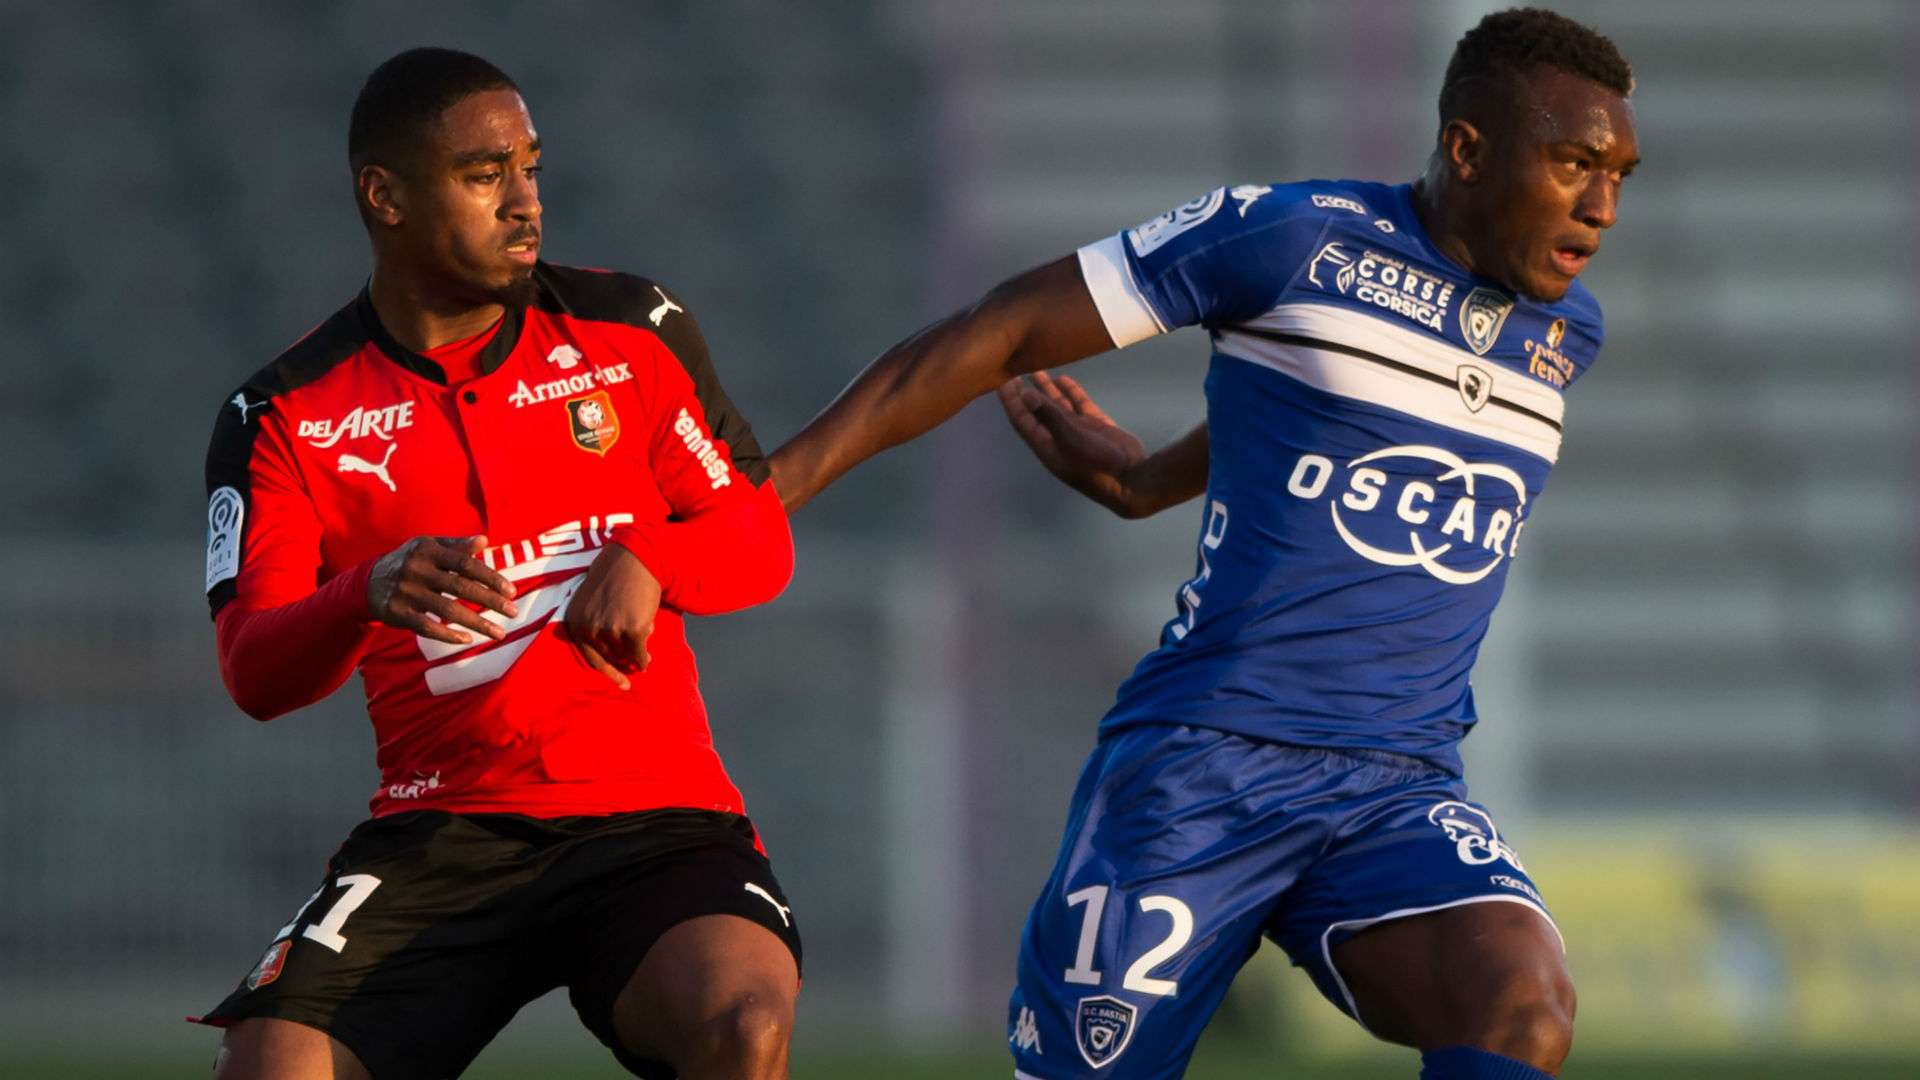 Abdoulaye Keita Bastia Rennes Ligue 1 292042017